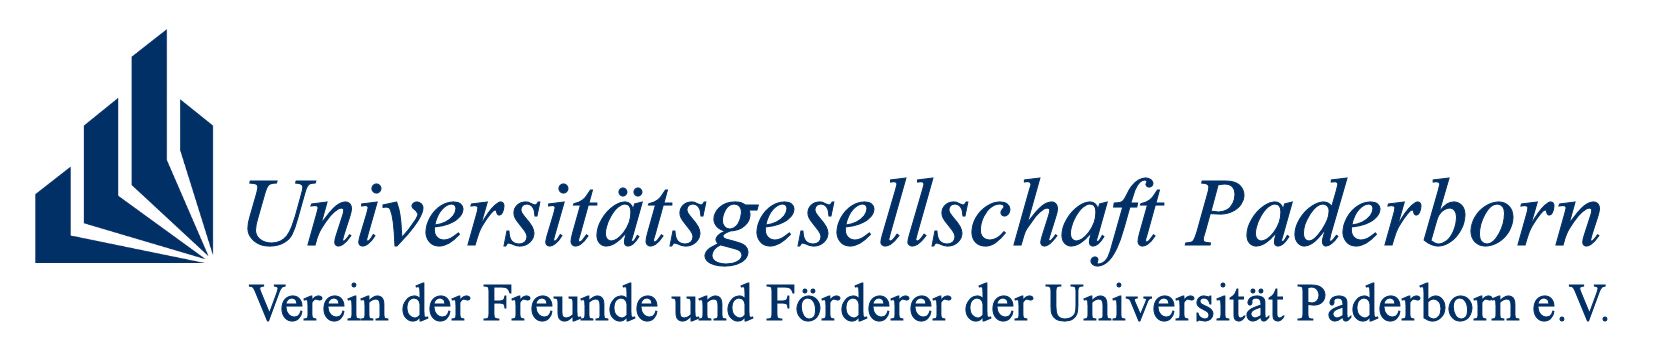 Logo Universitätsgesellschaft Paderborn